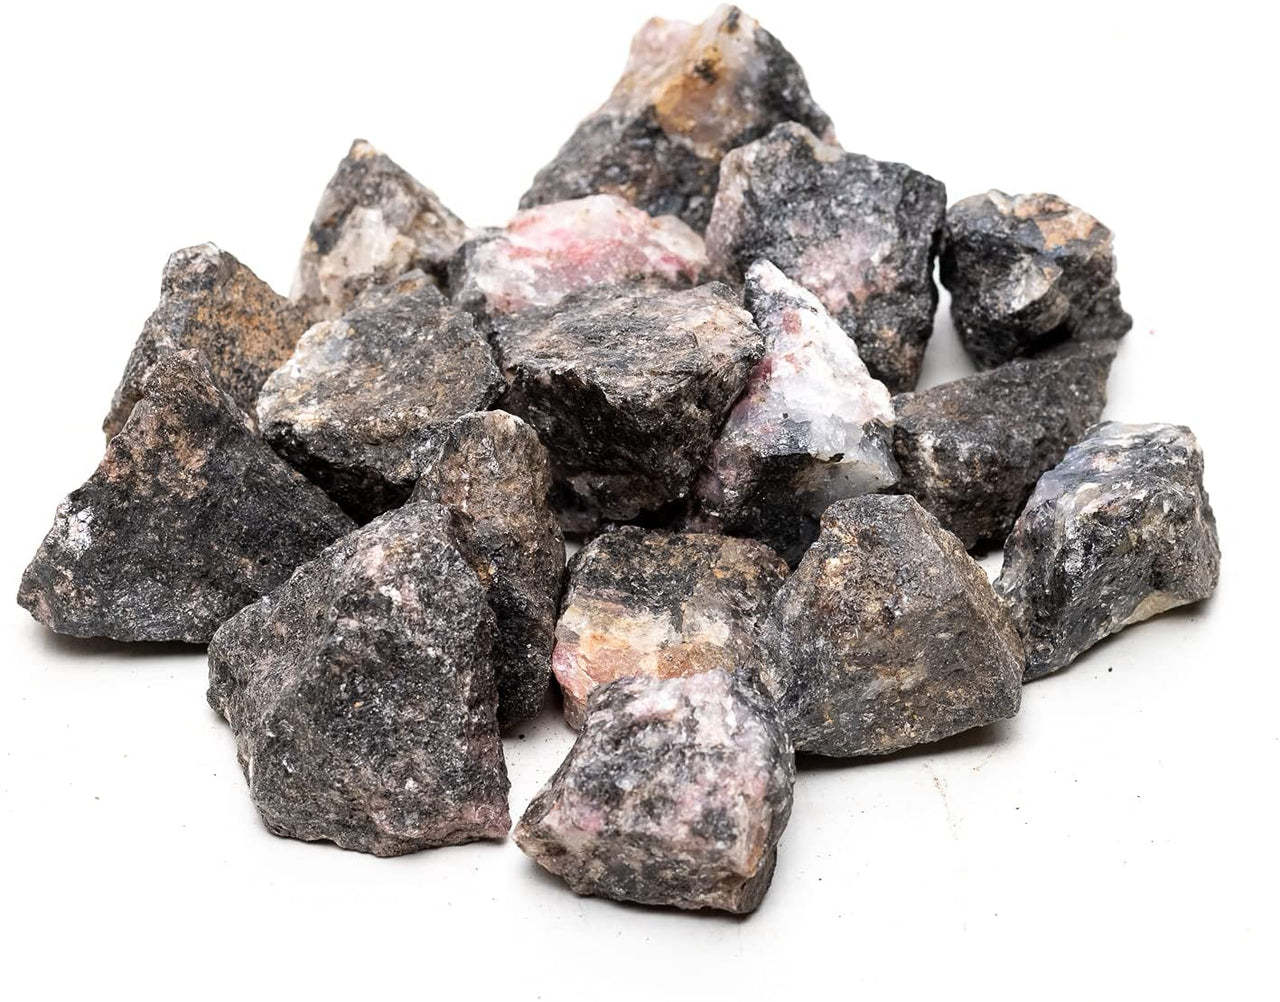 Rough Rhodonite Crystal Stones 1 lb Bulk